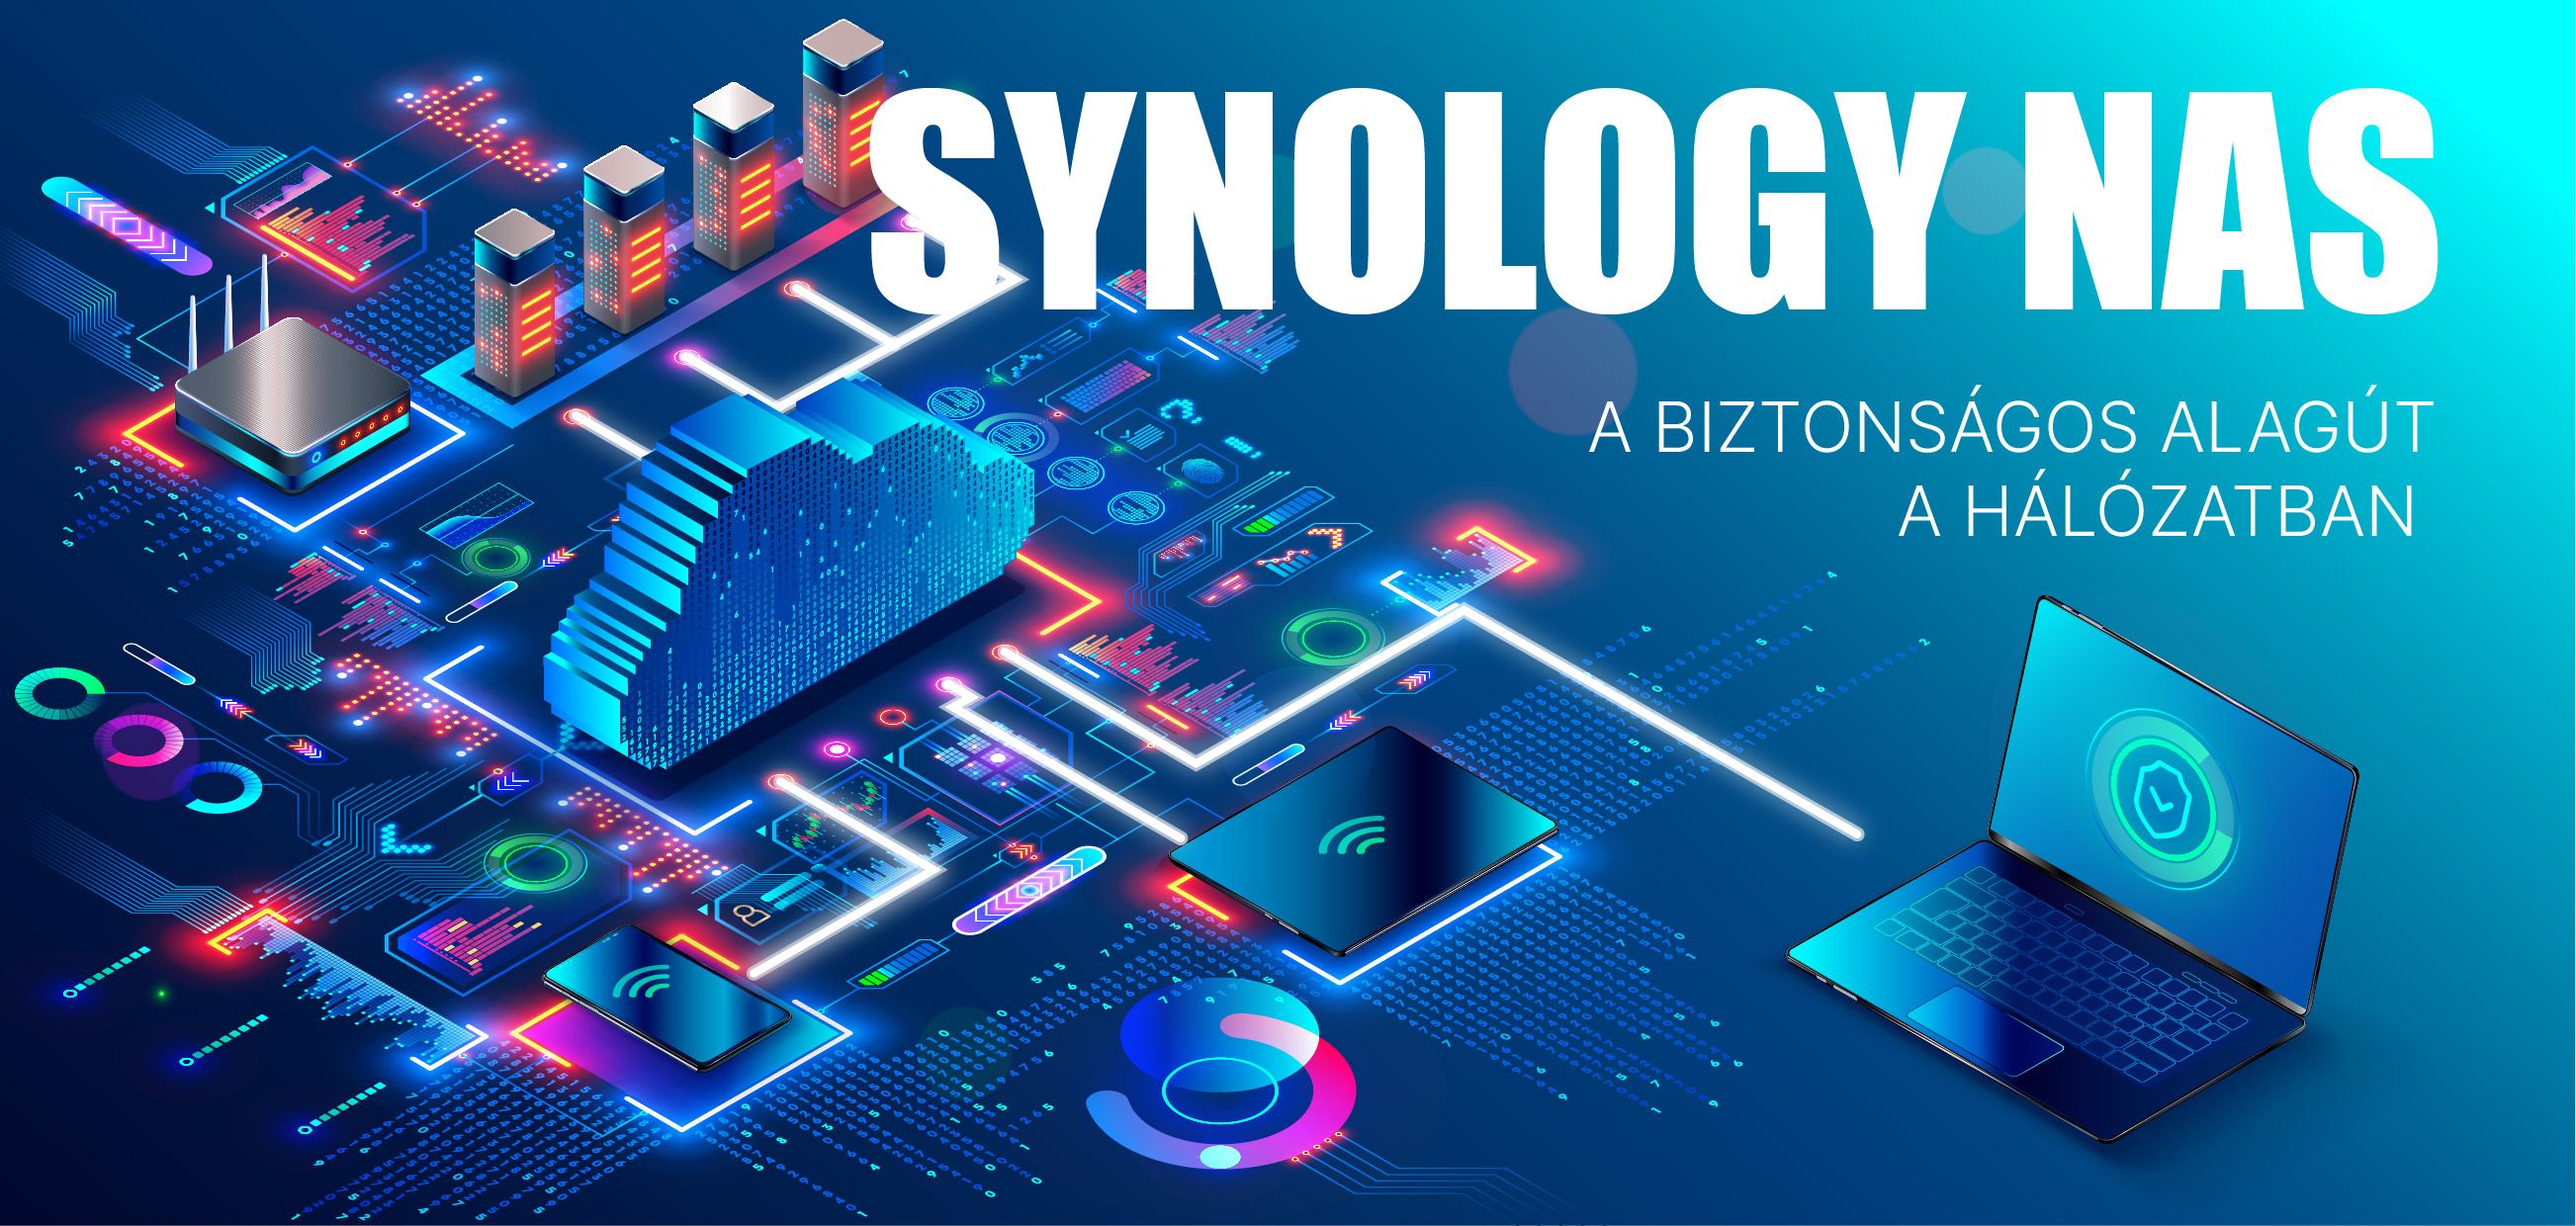 Synology NAS a biztonságos alagút a hálózatban